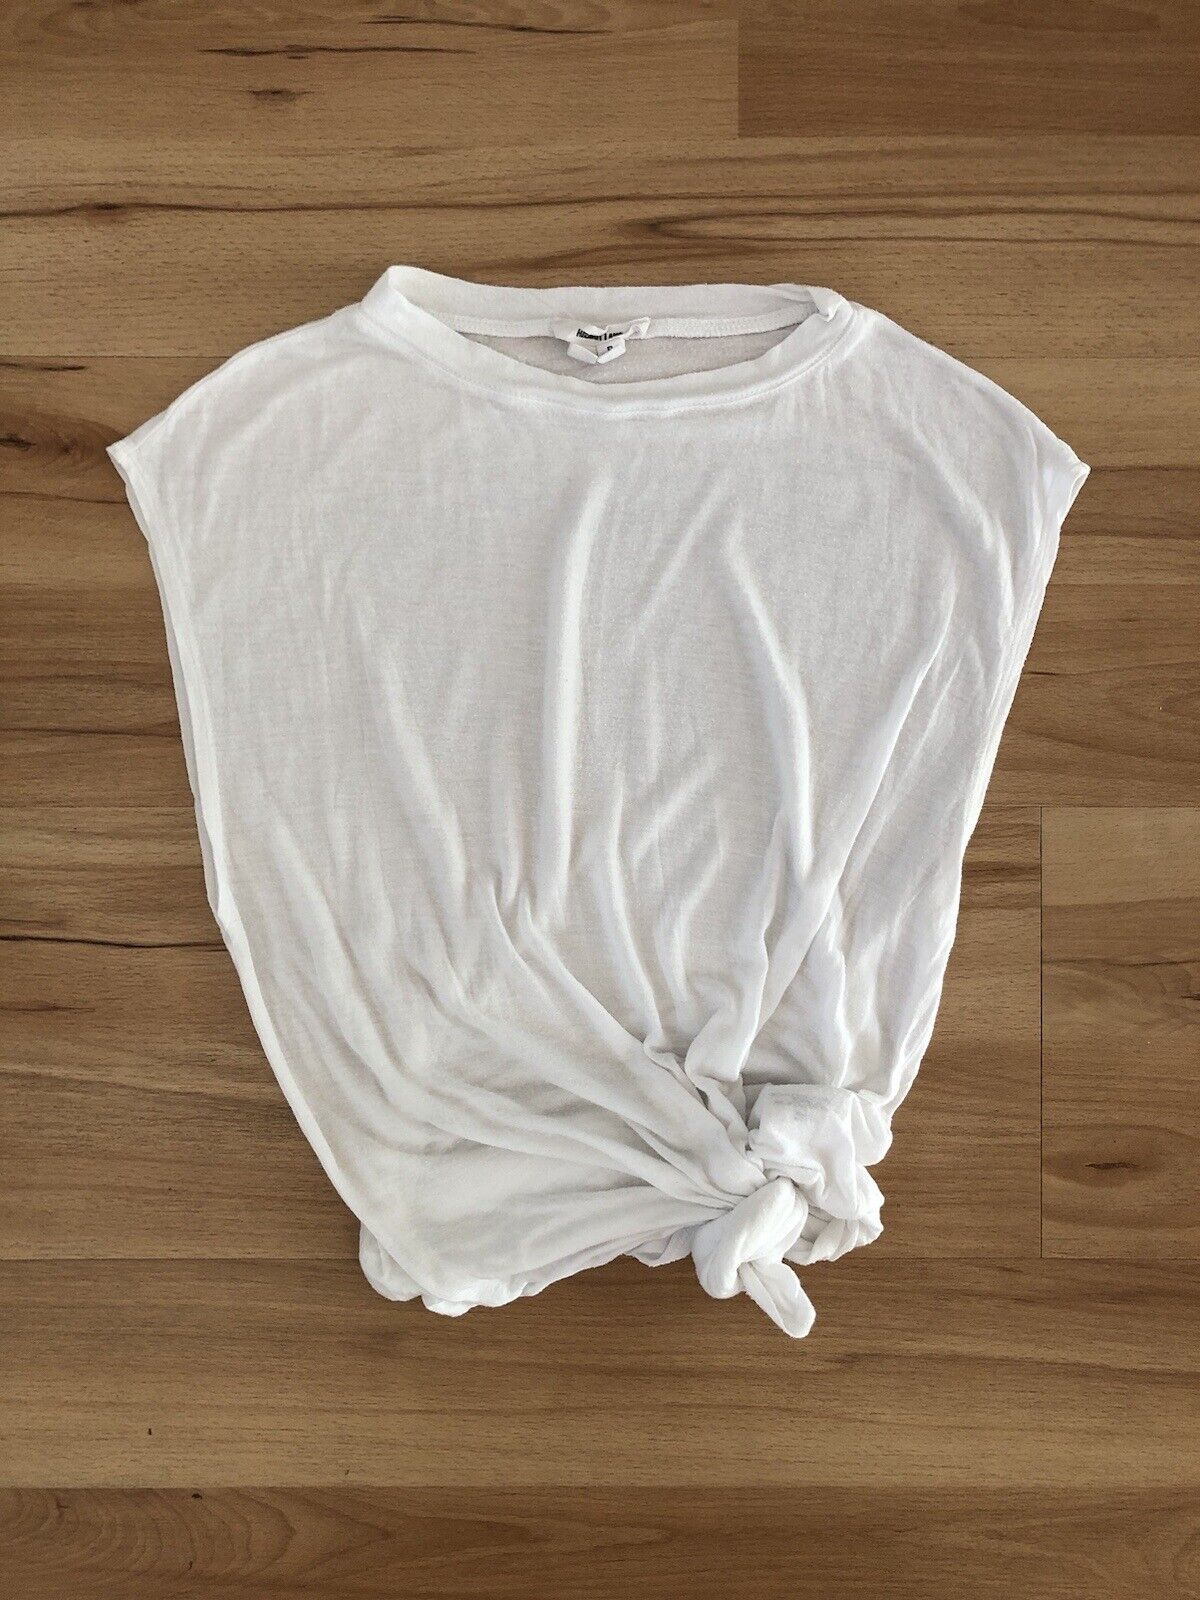 Helmut Lang White Sleeveless Muscle Shirt Top - Size P XS 0 2